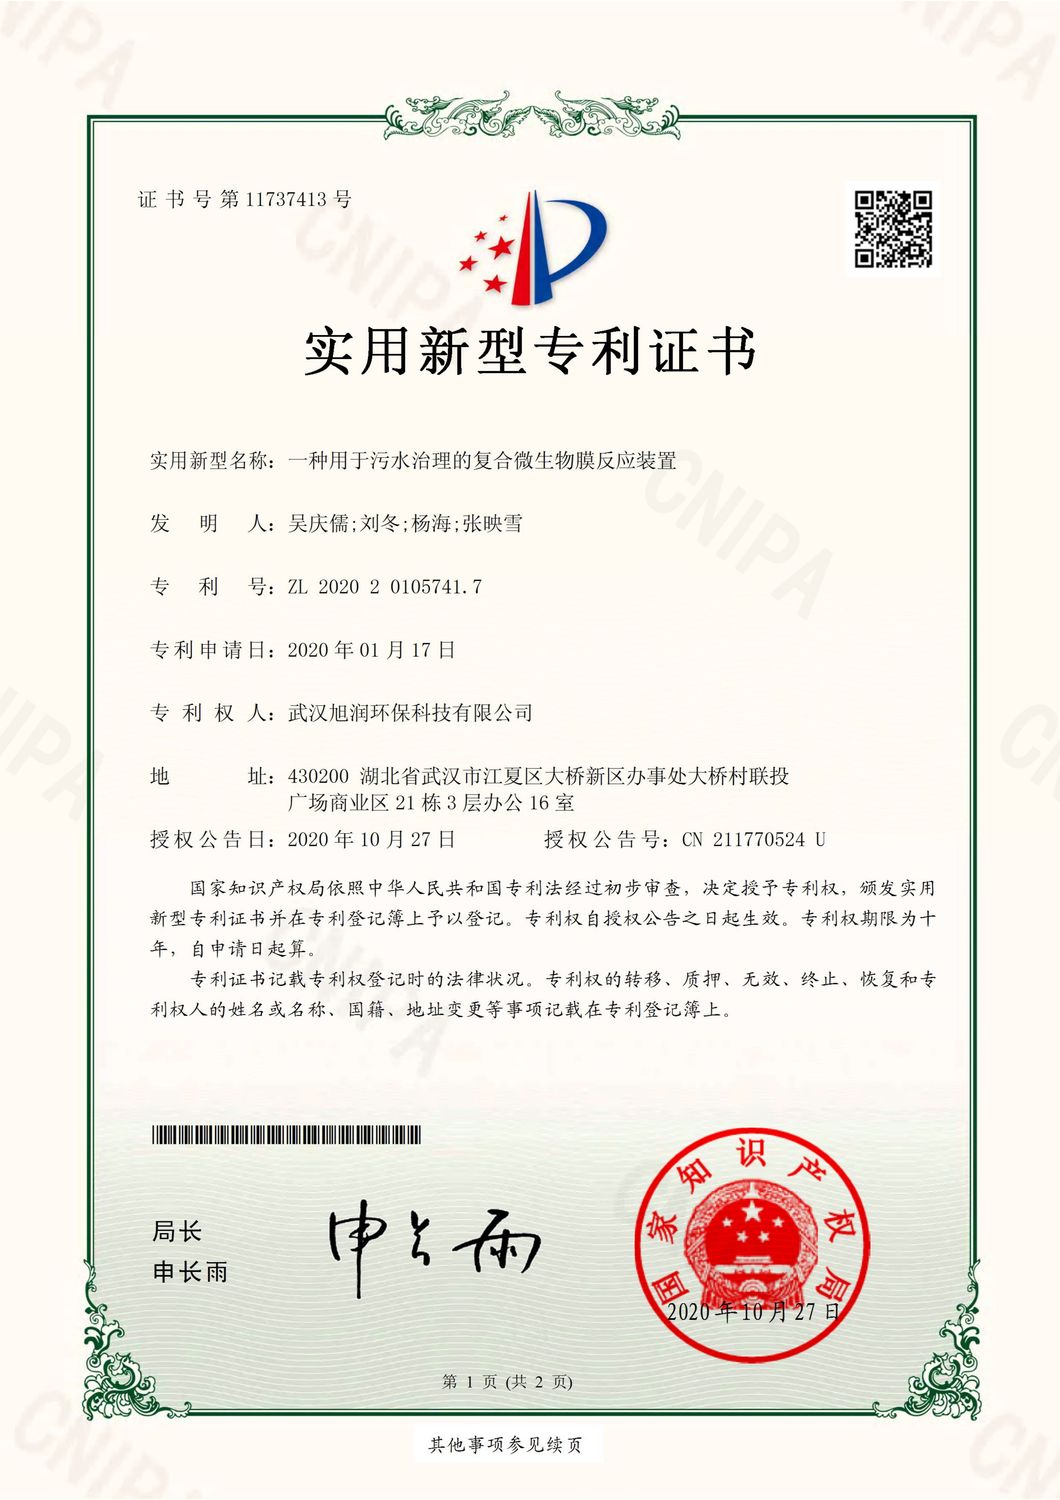 HF20B0147-武汉旭润环保-电子签章证书_1.jpg